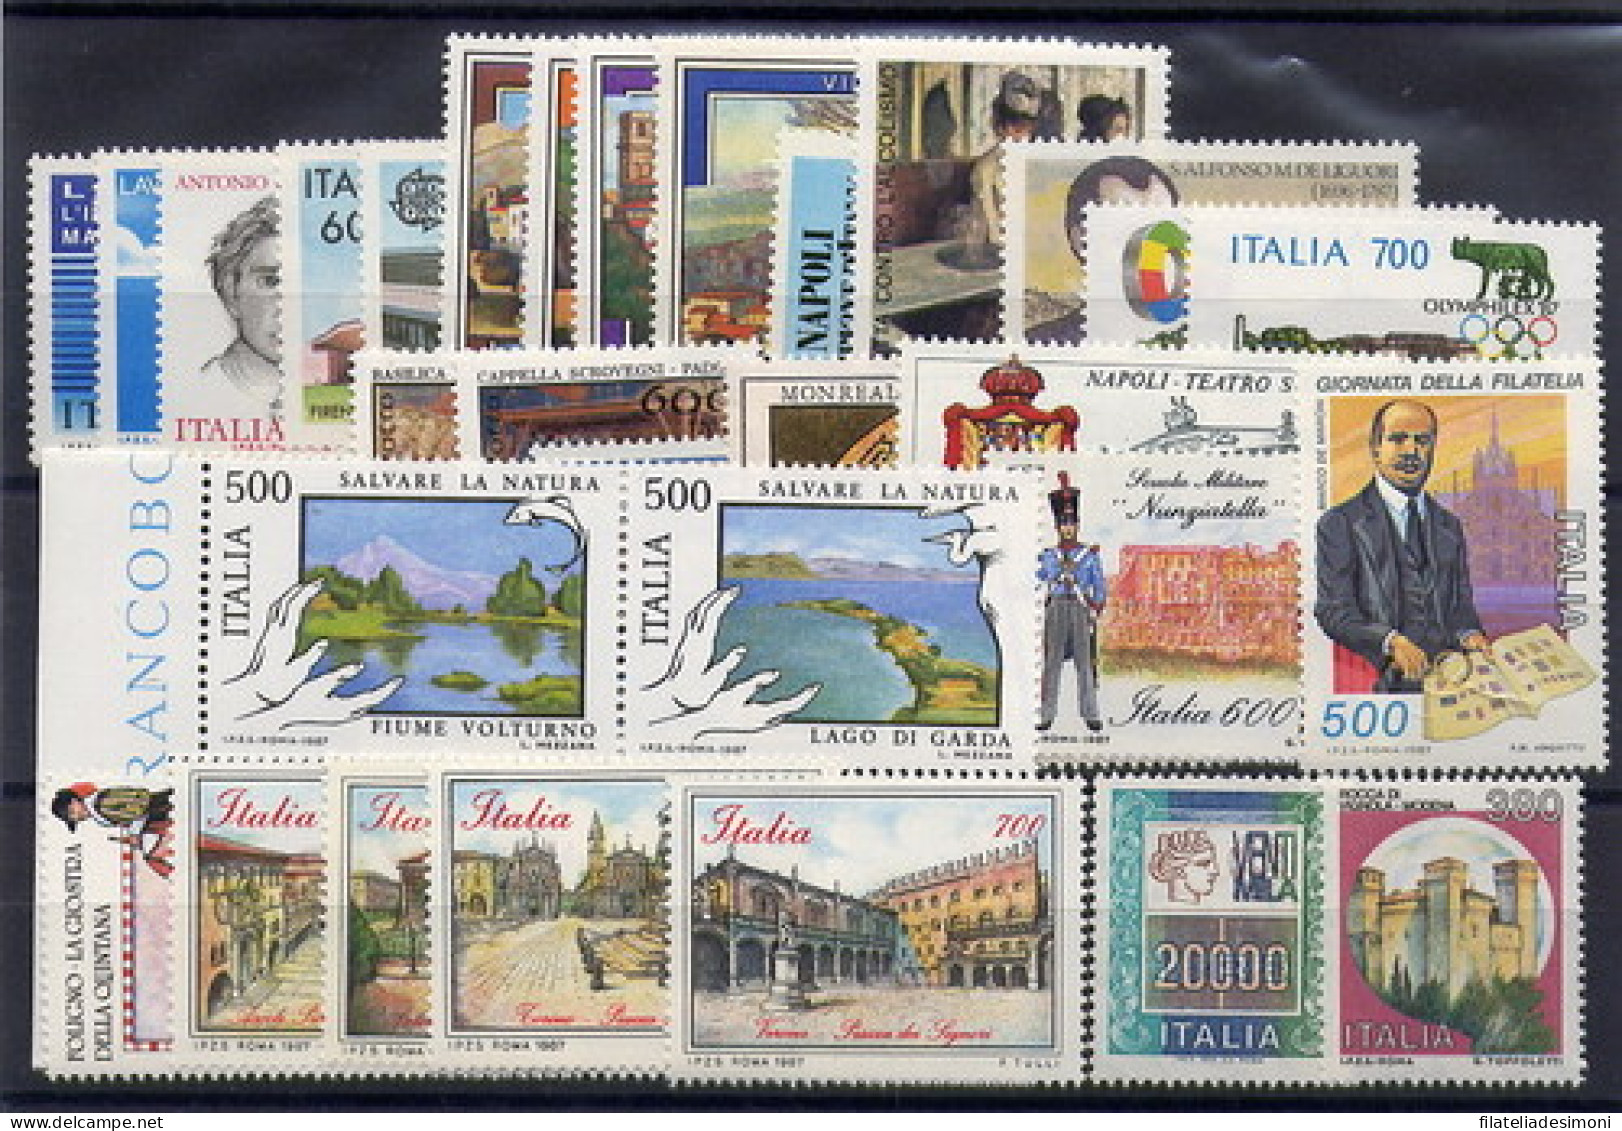 1980-1989 Italia Repubblica, Annate Complete OFFERTA SPECIALE, francobolli nuovi - MNH**